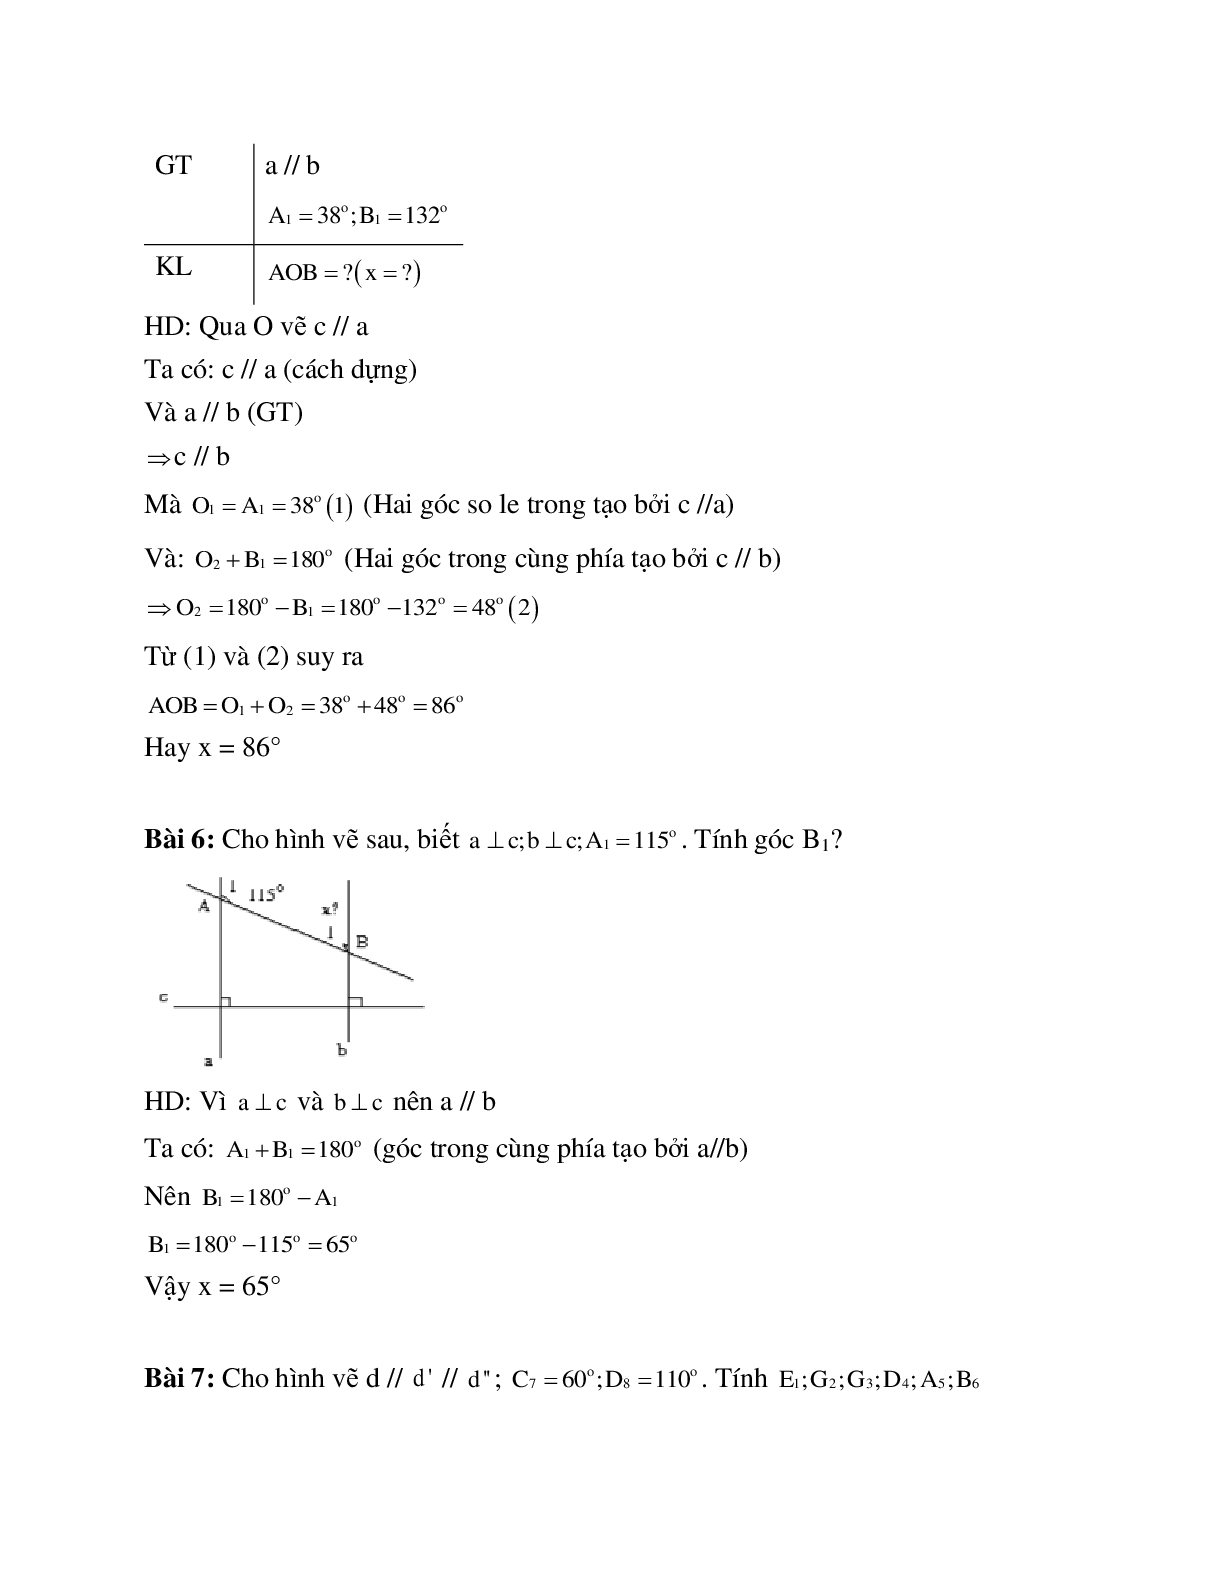 Hệ thống bài tập về Tiên đề Ơ-clit - Từ vuông góc đến song song có lời giải (trang 4)